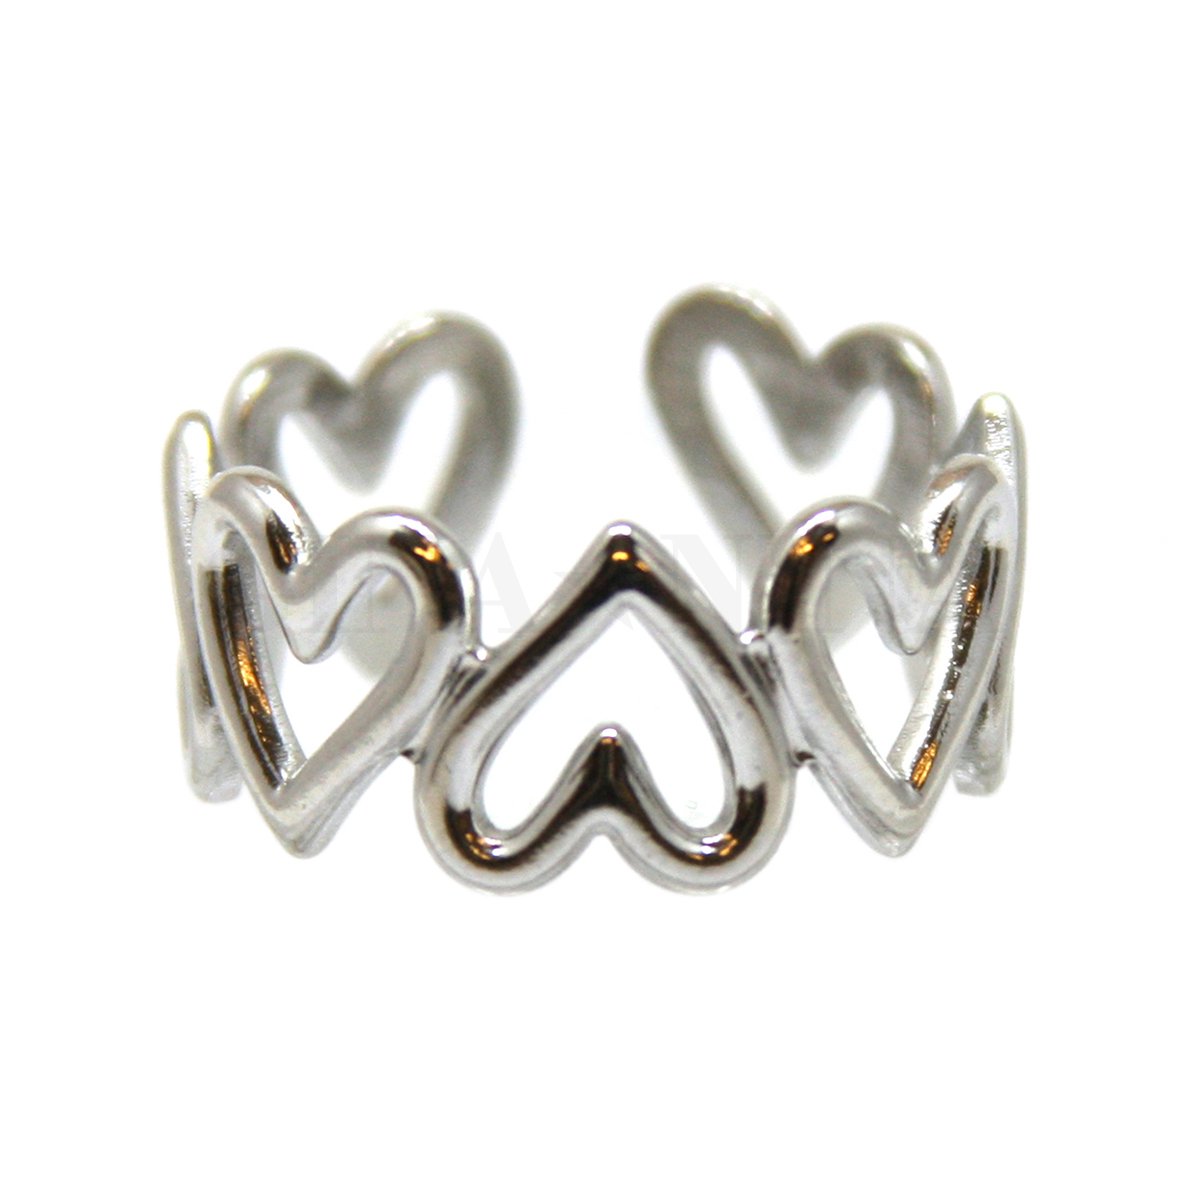 Ring van Zilverkleurig stainless steel, Hart, band met opengewerkte ringen, 18 mm, Verstelbaar, In kadodoosje